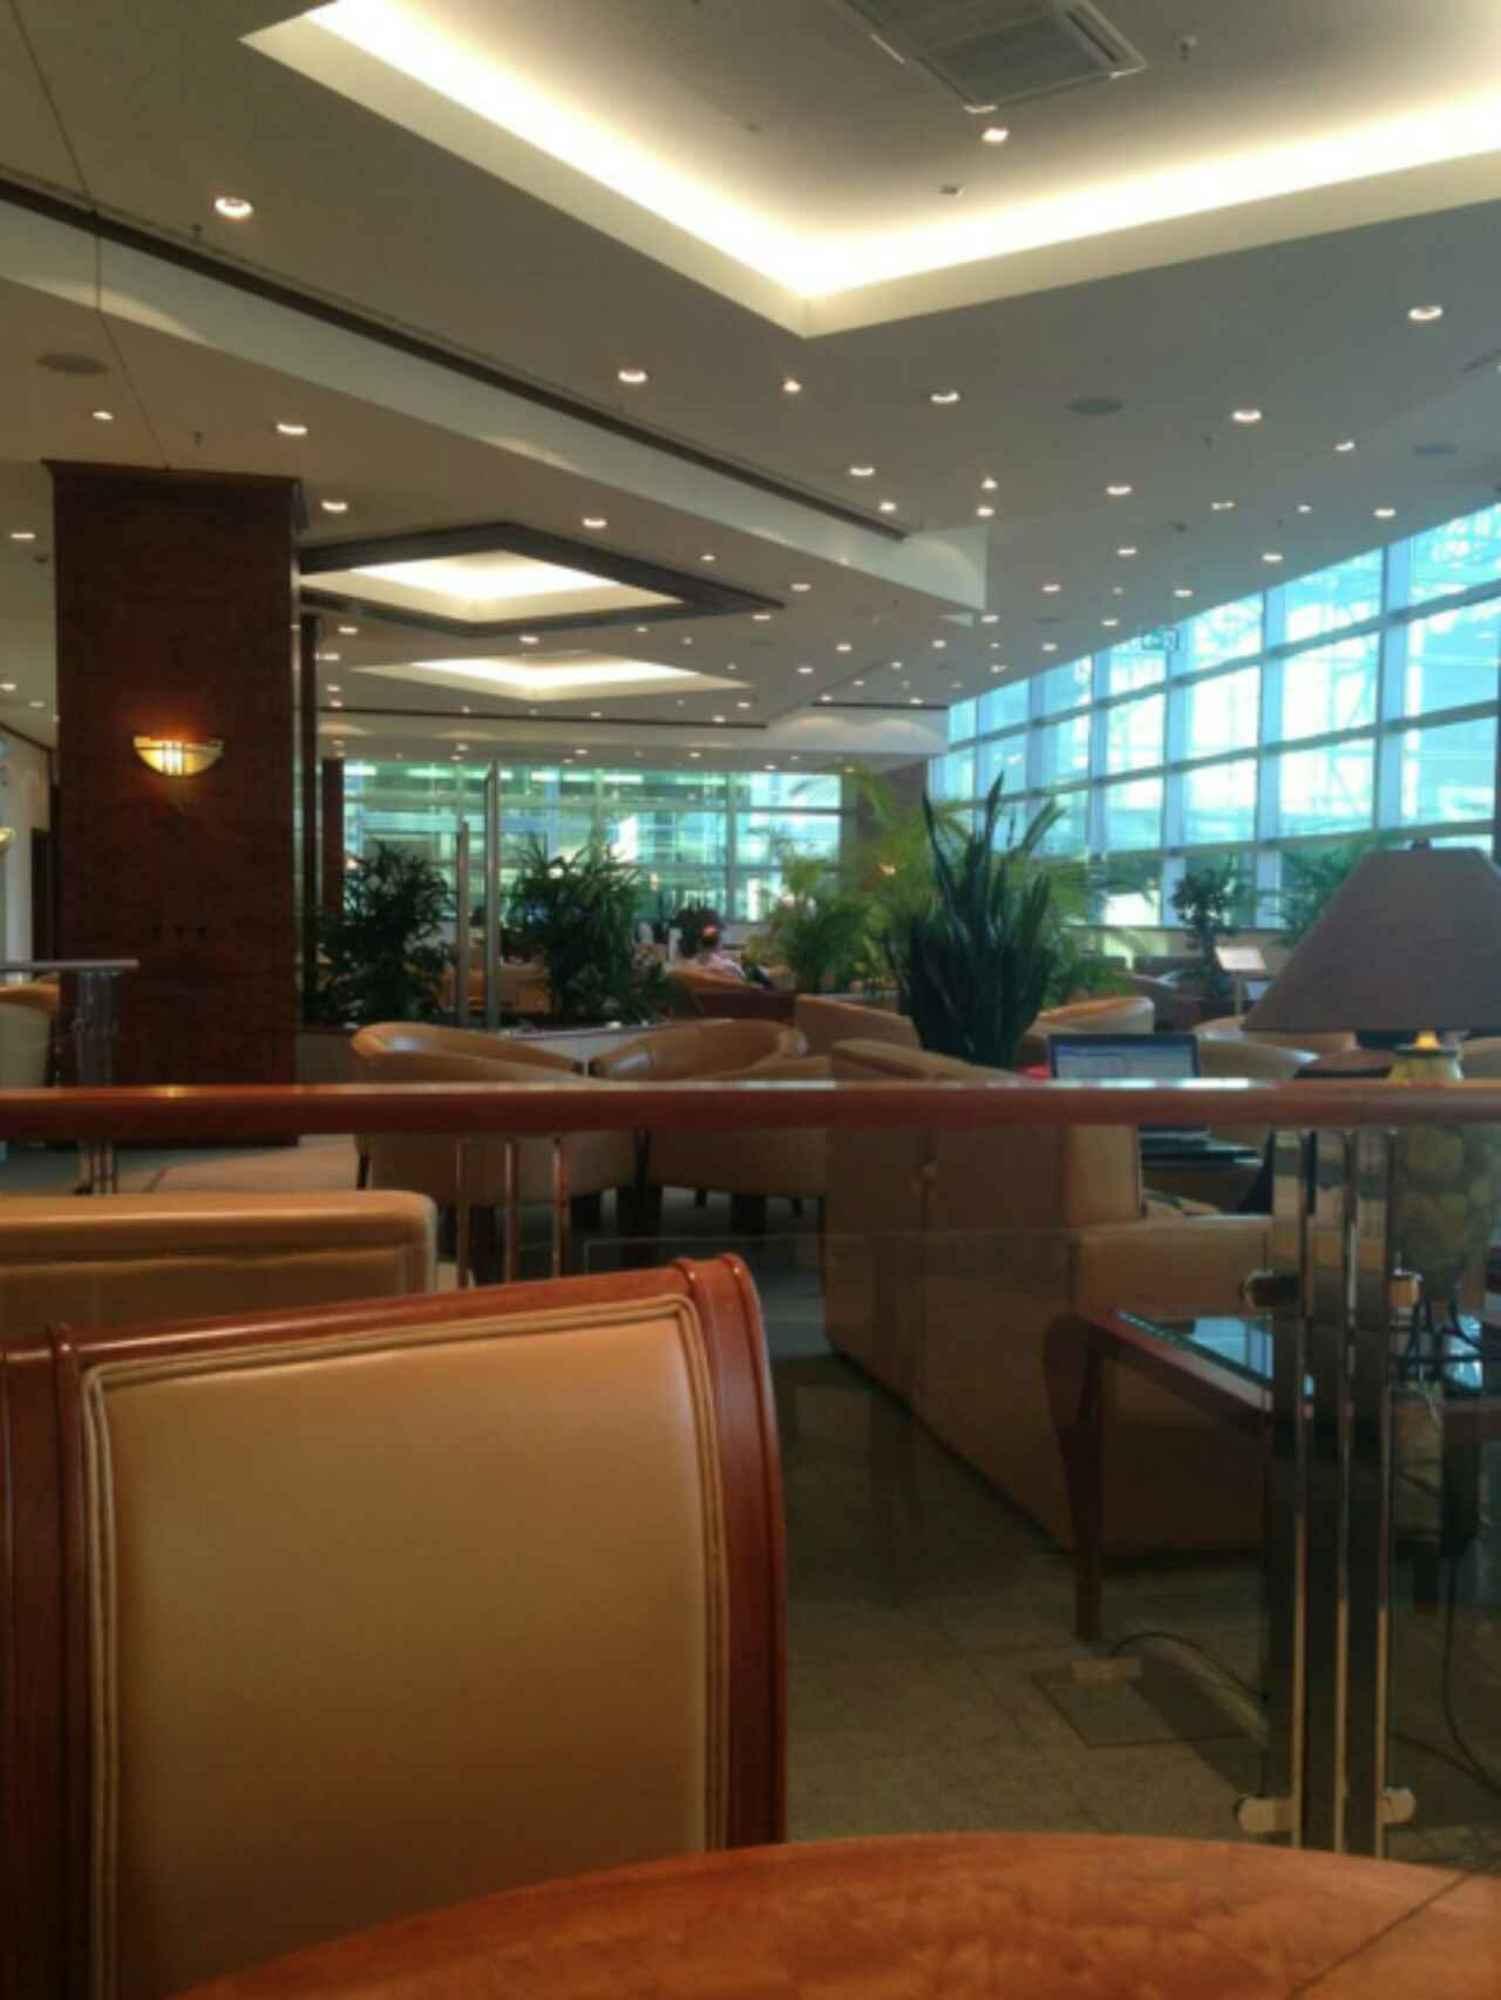 The Emirates Lounge image 2 of 8